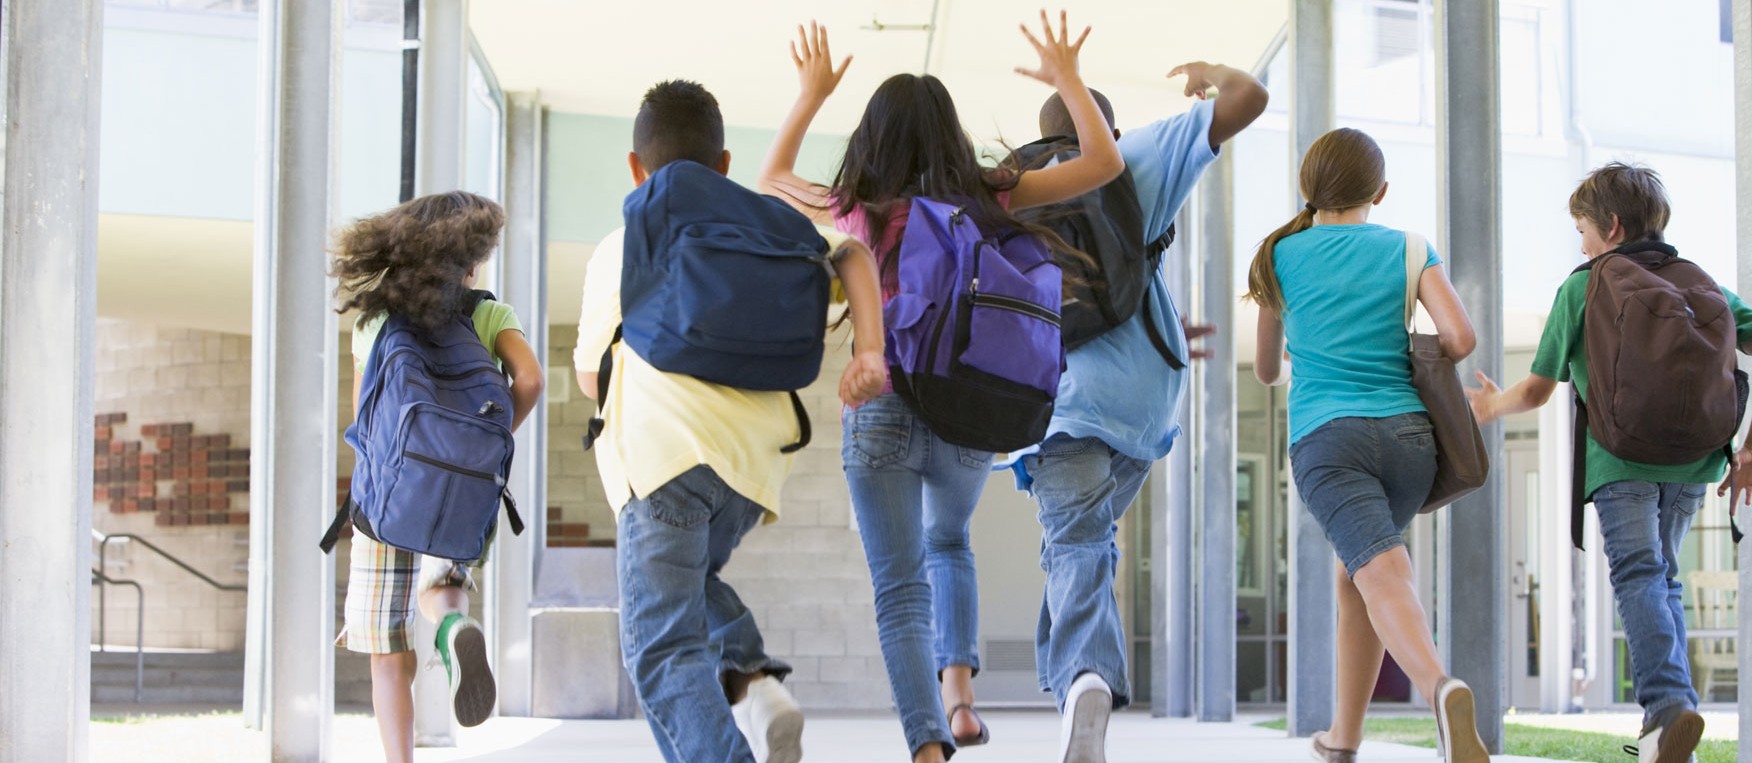 Kinder rennen aus dem Schulhaus